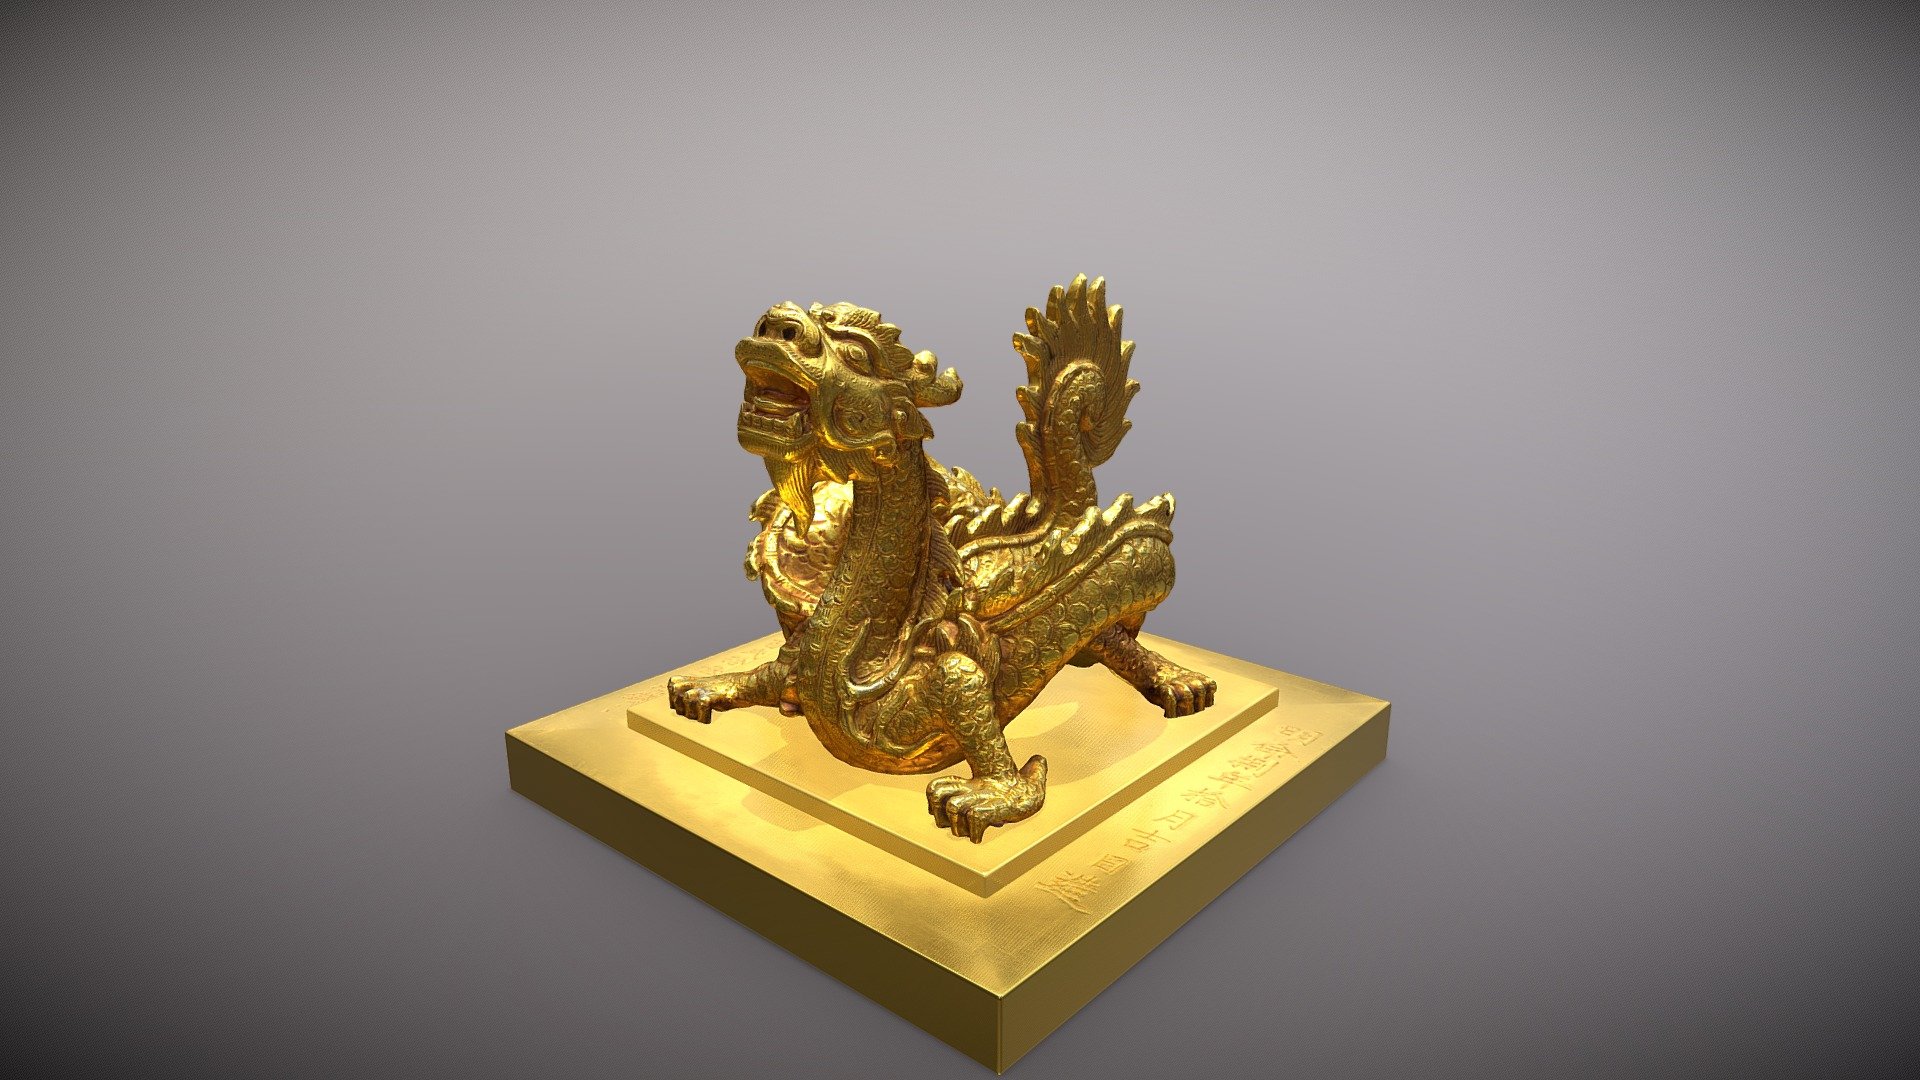 Ấn Sắc mệnh chi bảo - 3D model by Di sản văn hóa Việt Nam (@dd.design) 3d model